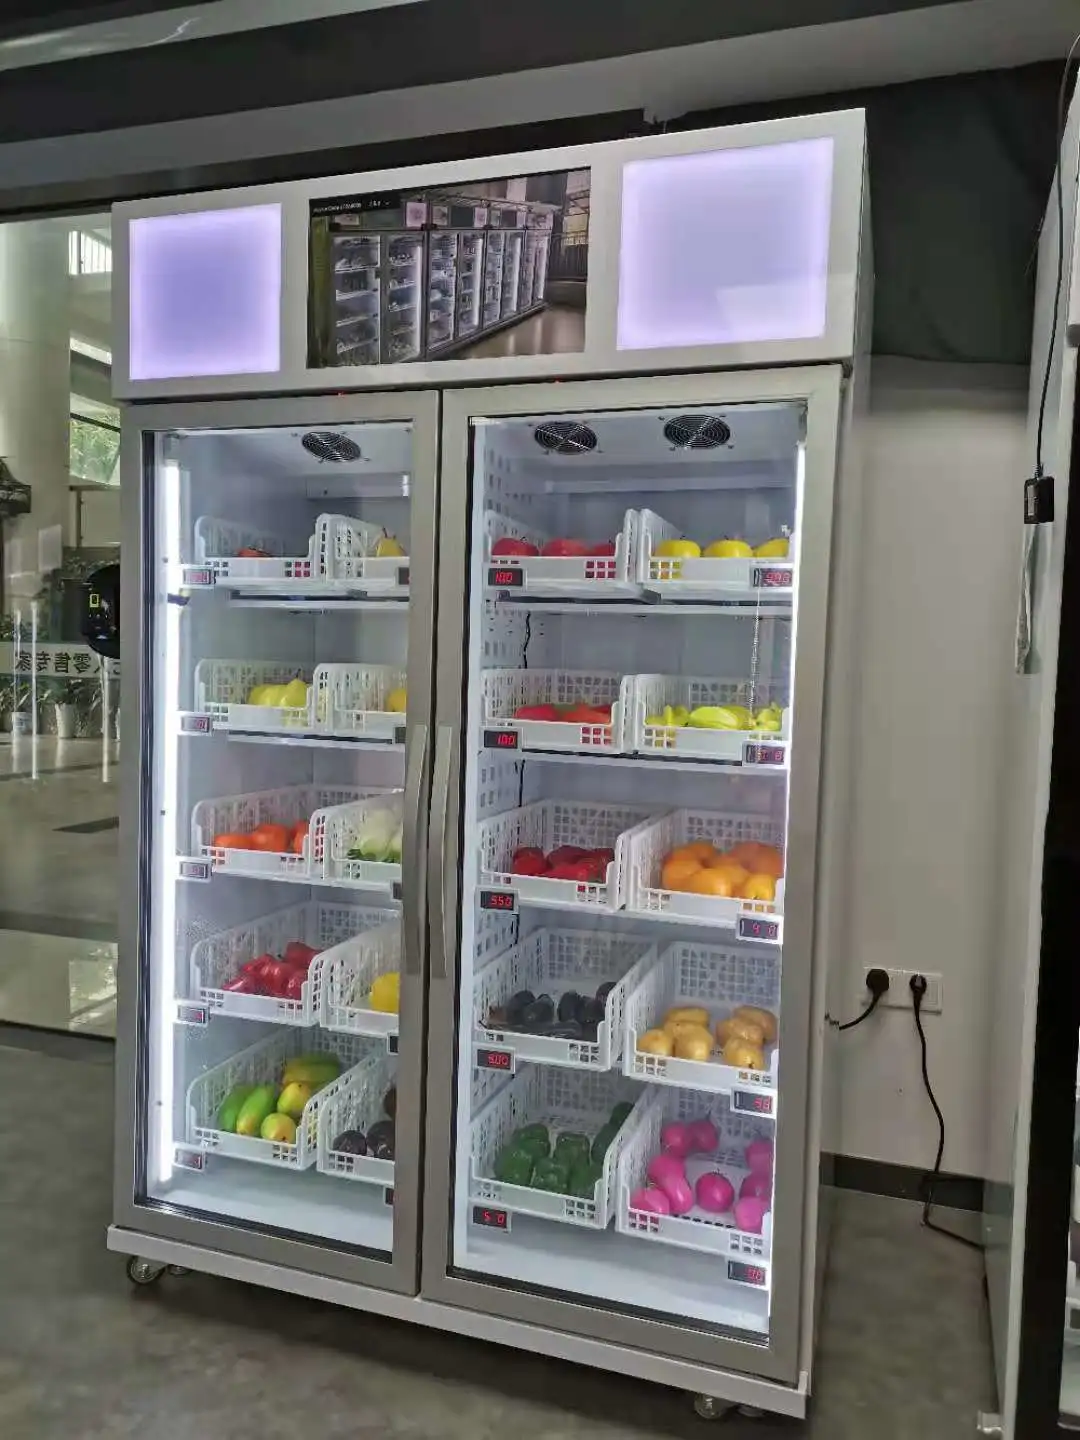 Smart fridge vending machine selling fresh farm produce product